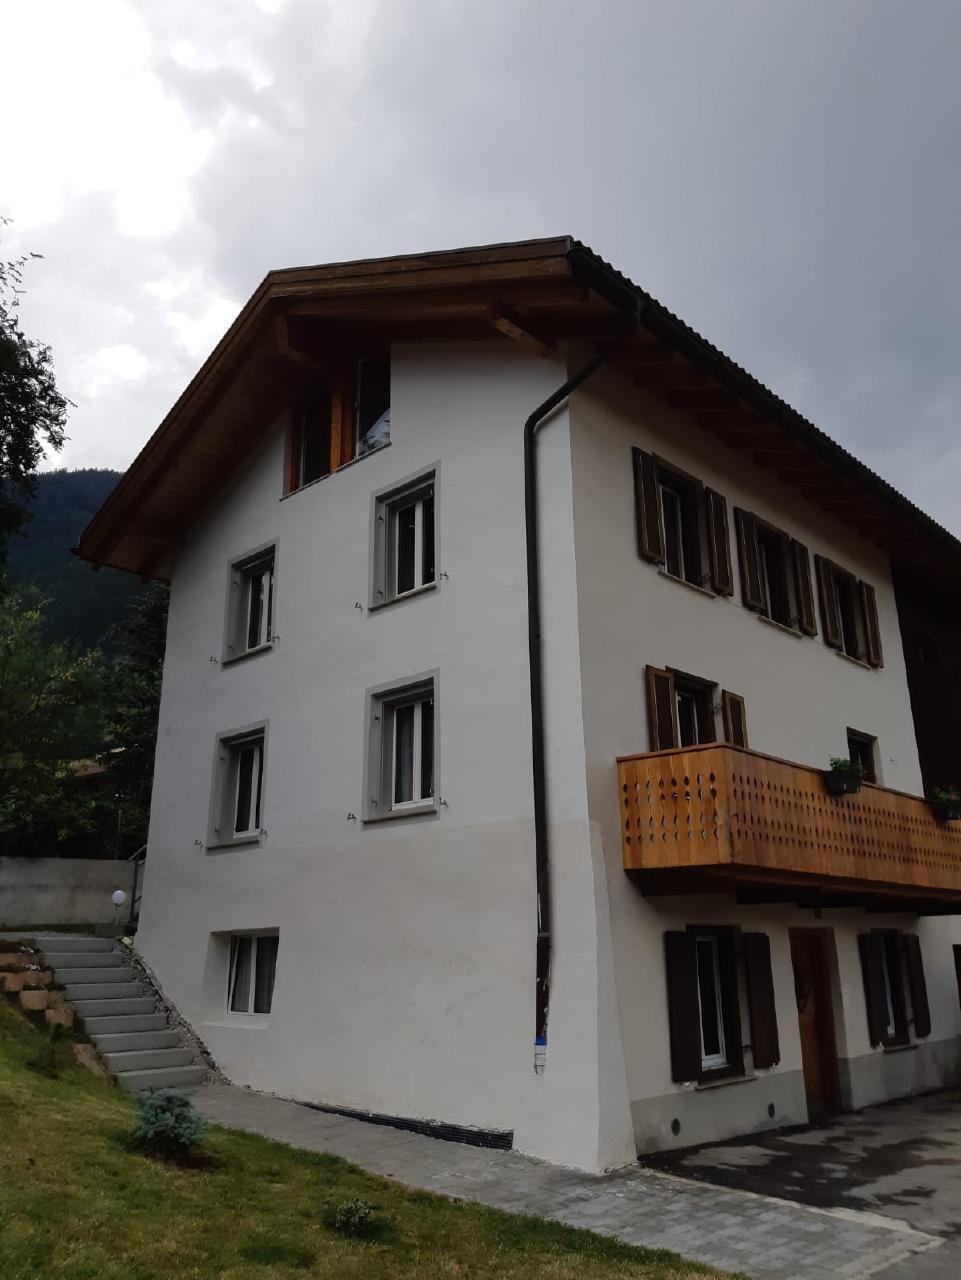 Ferienwohung in altem Bauernhaus Ferienwohnung  Graubünden